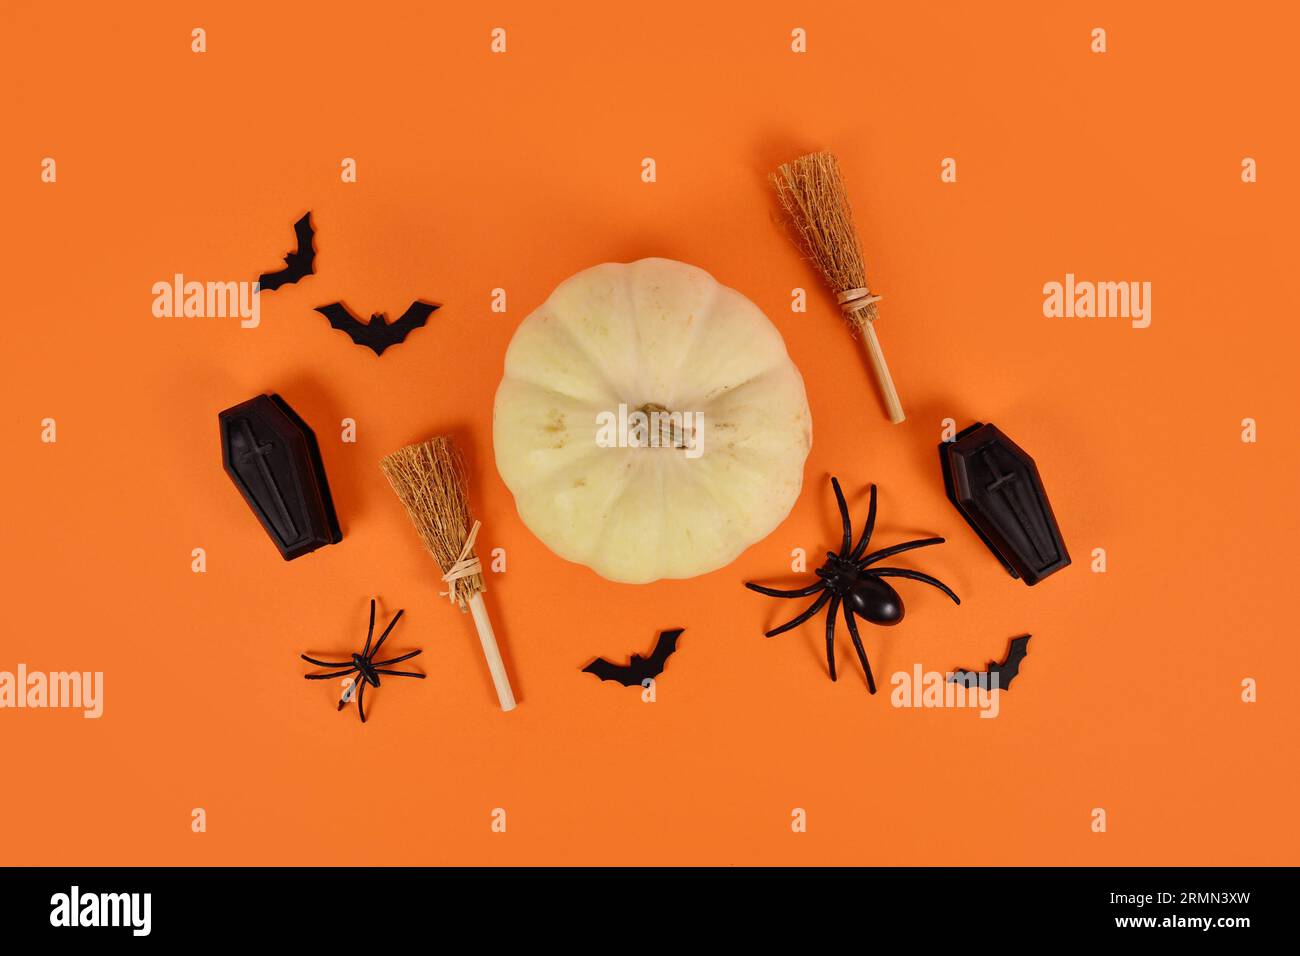 Arrangement d'Halloween avec citrouille blanche, araignées noires, chauves-souris et cercueils et balais de sorcière sur fond orange Banque D'Images